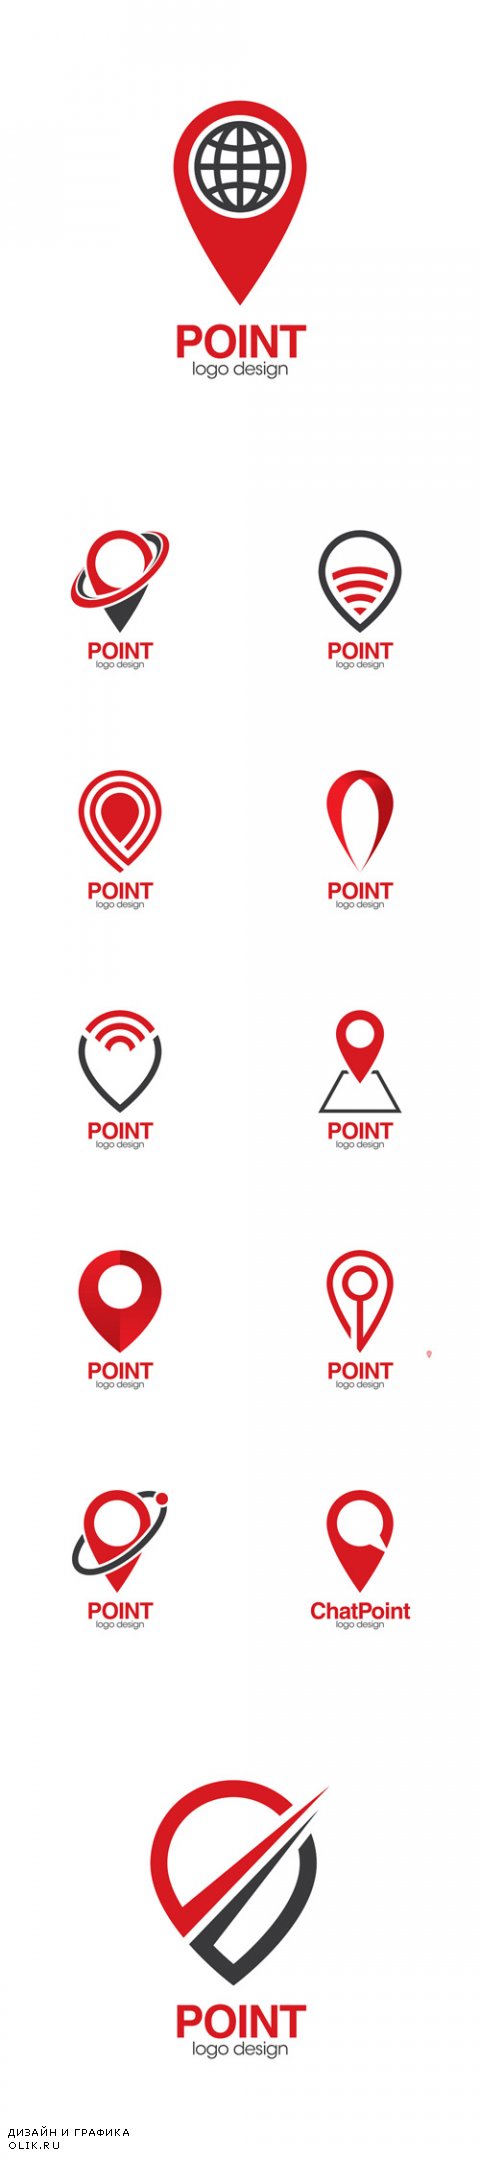 Vector Point Creative Concept Logo Design Template